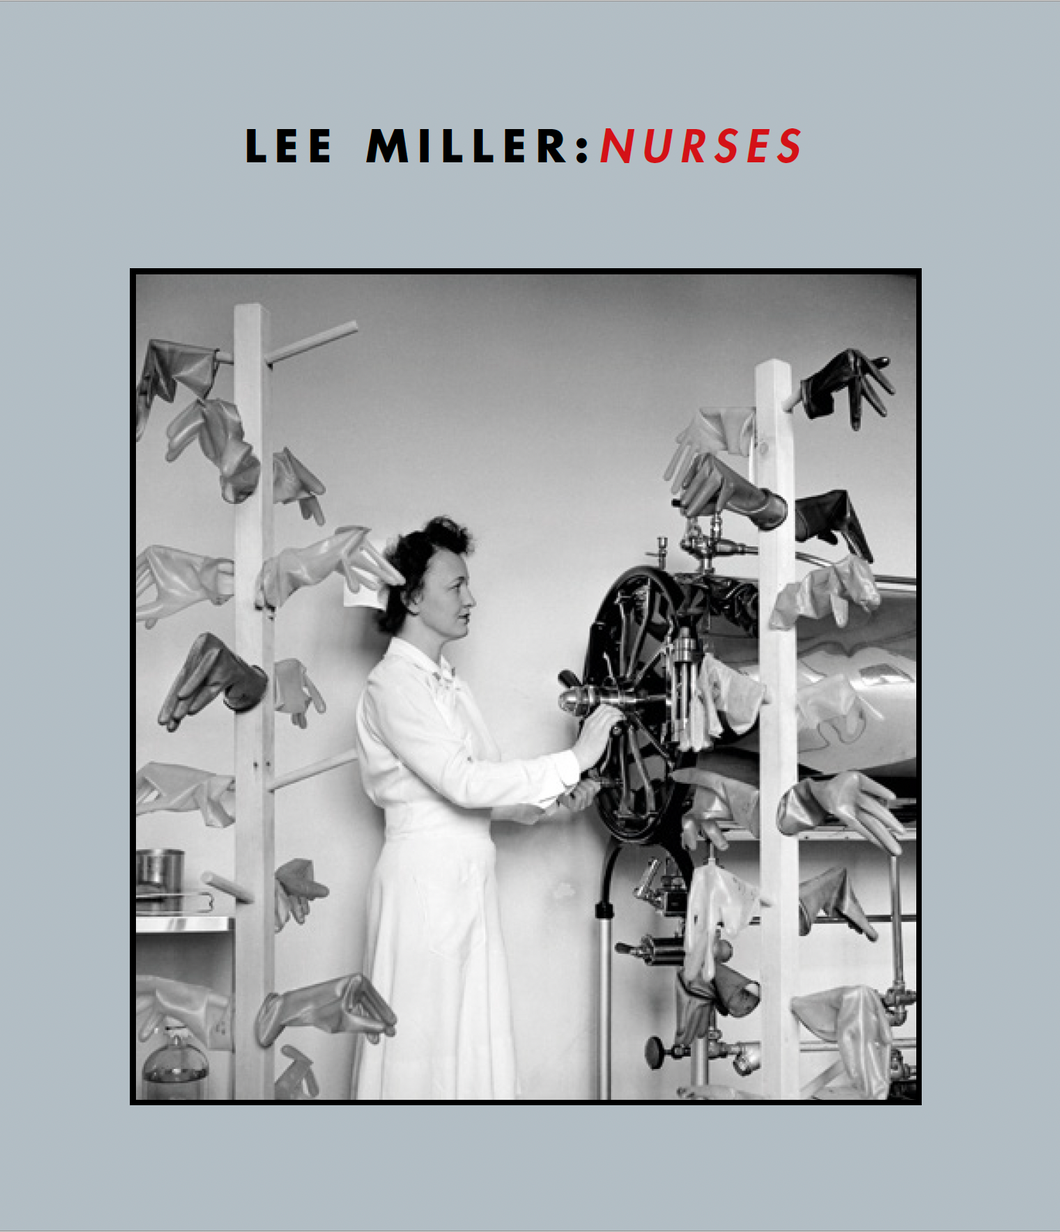 Lee Miller: Nurses exhibition catalogue